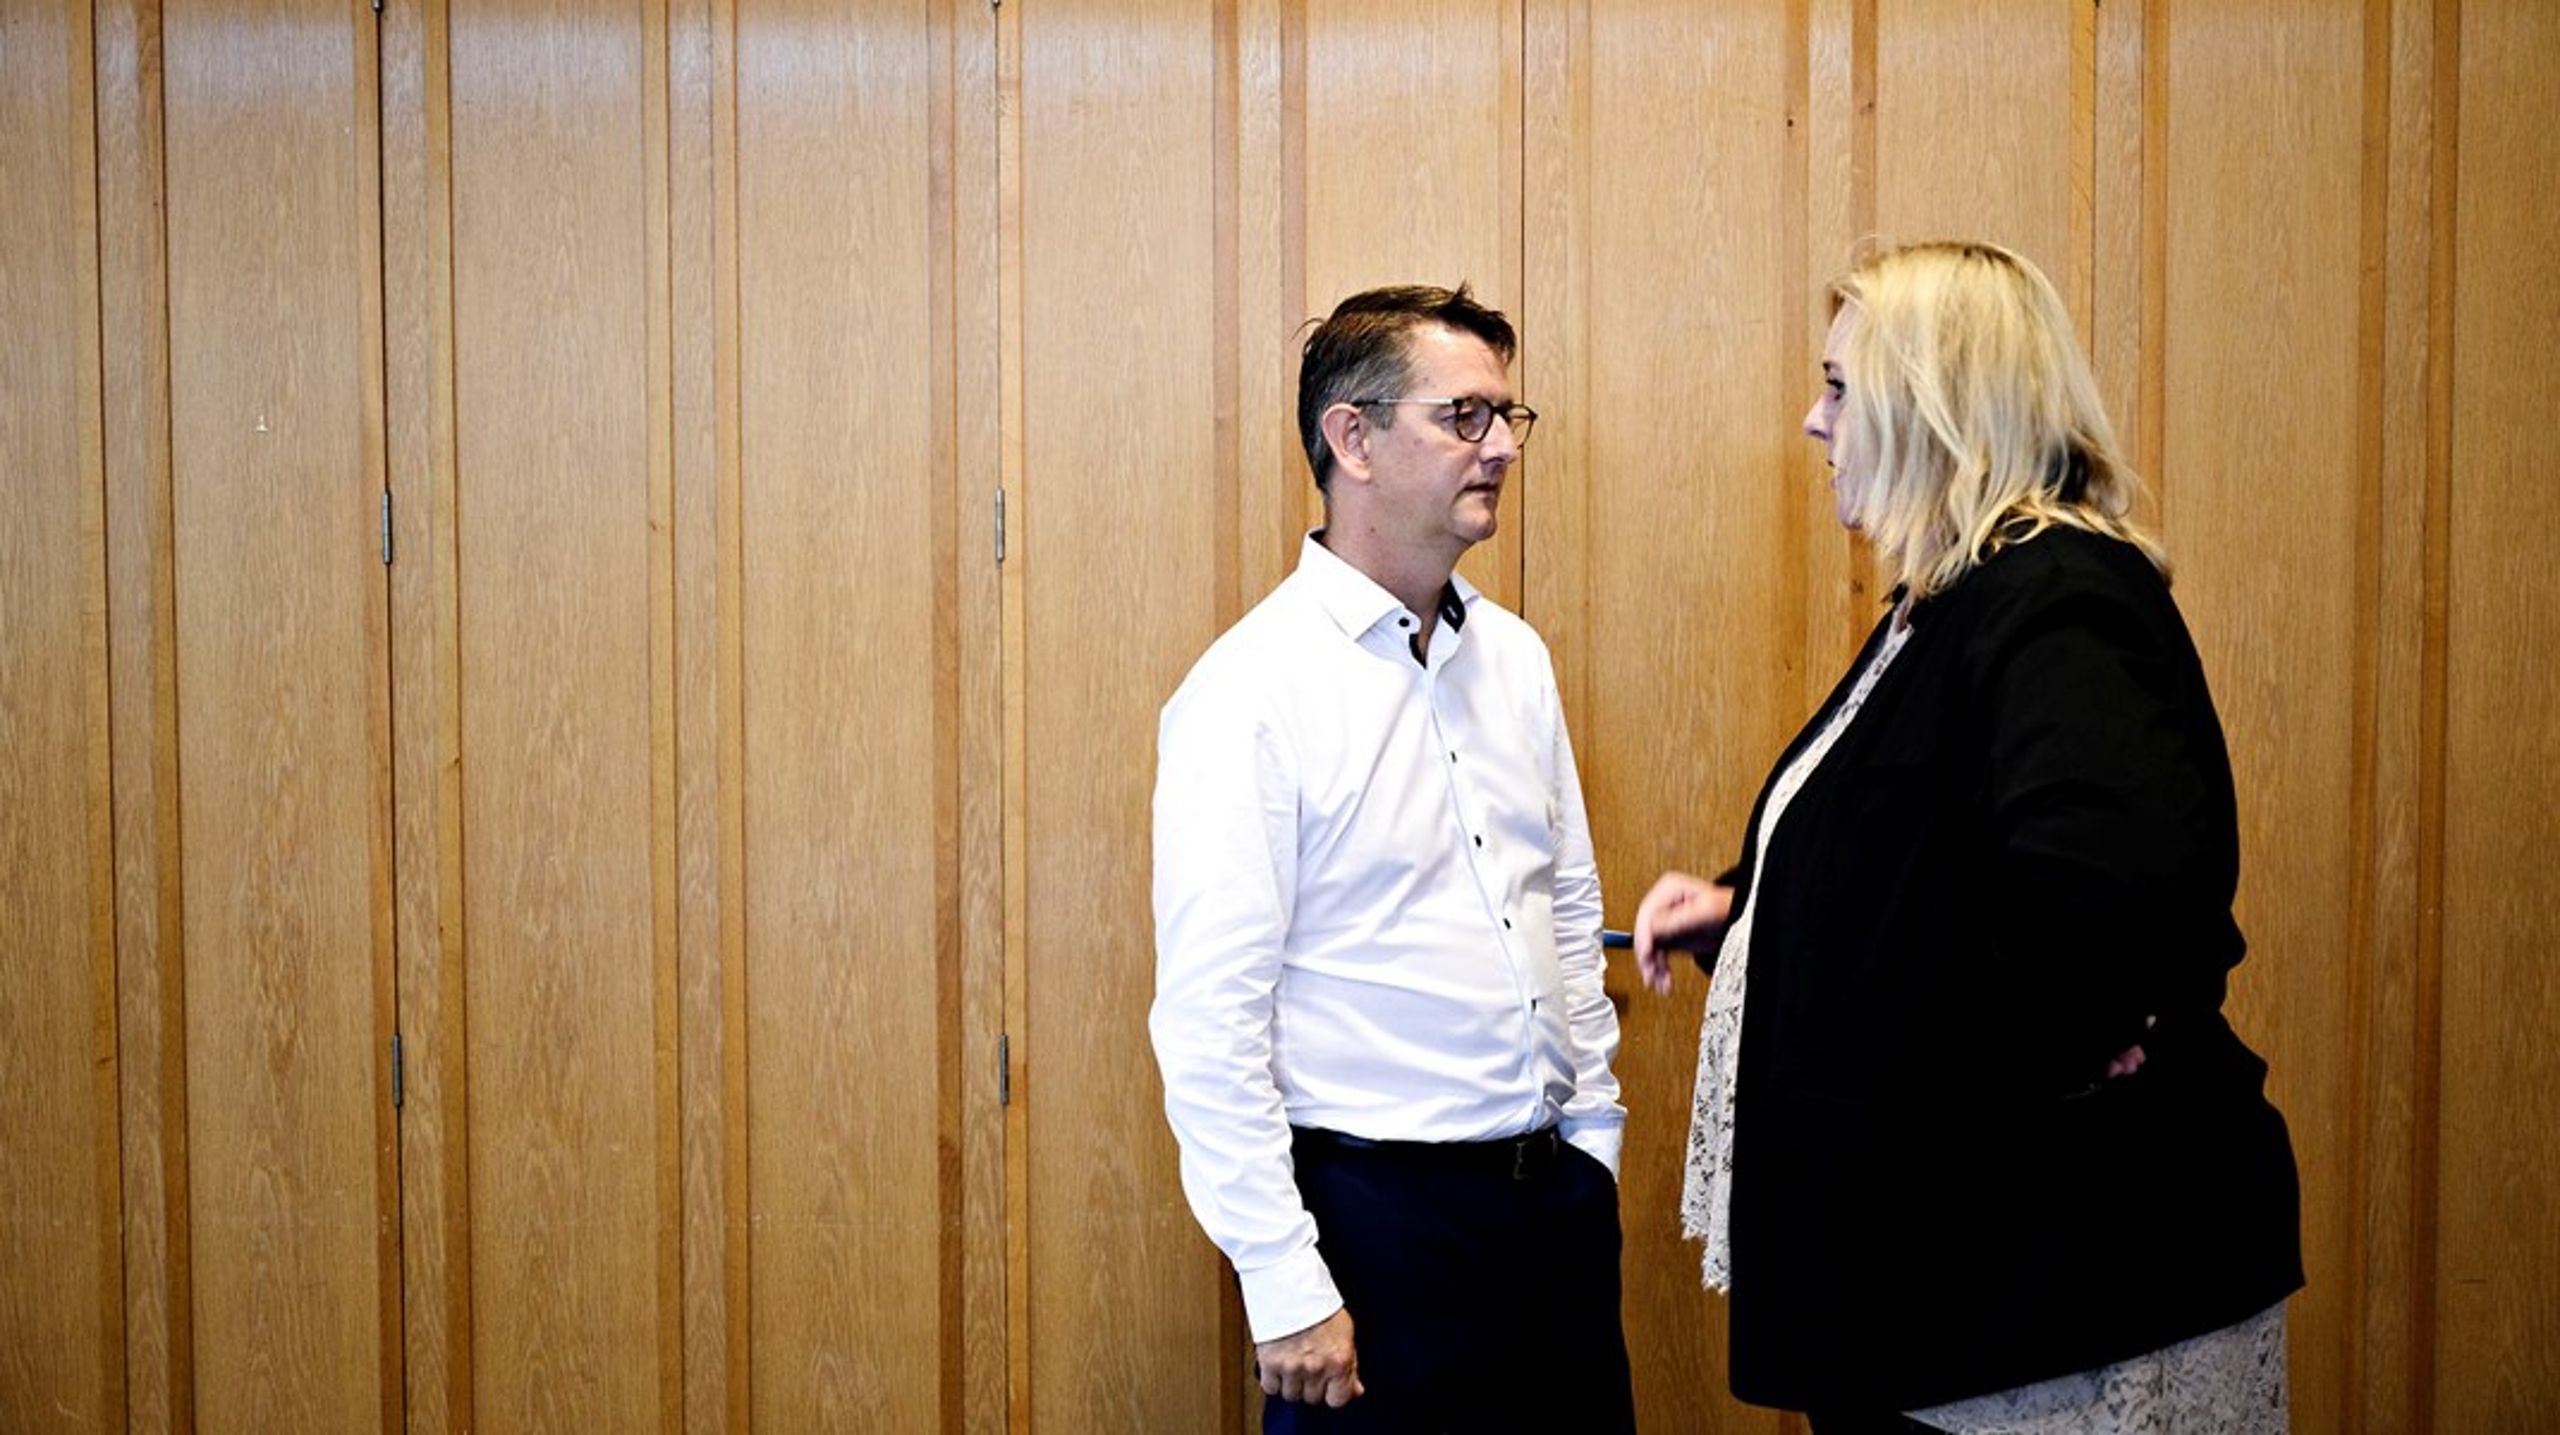 Både Torsten Schack Pedersen, erhvervsordfører for Venstre,&nbsp;og Konservatives erhvervsordfører, Mona Juul, stiller op ved det kommende folketingsvalg, der afholdes 1. november.&nbsp;